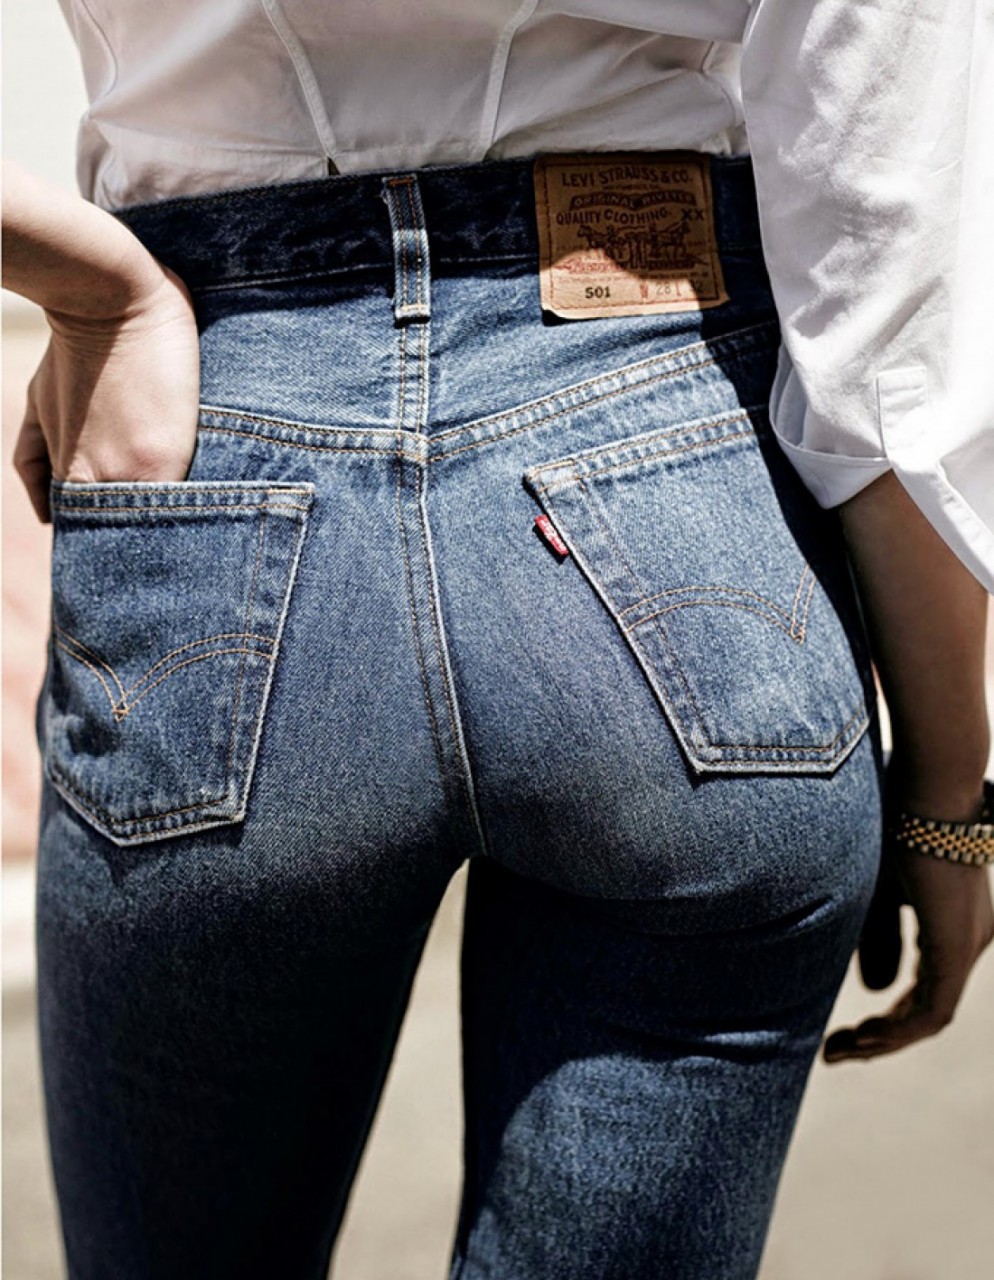 Как правильно стирать джинсы?